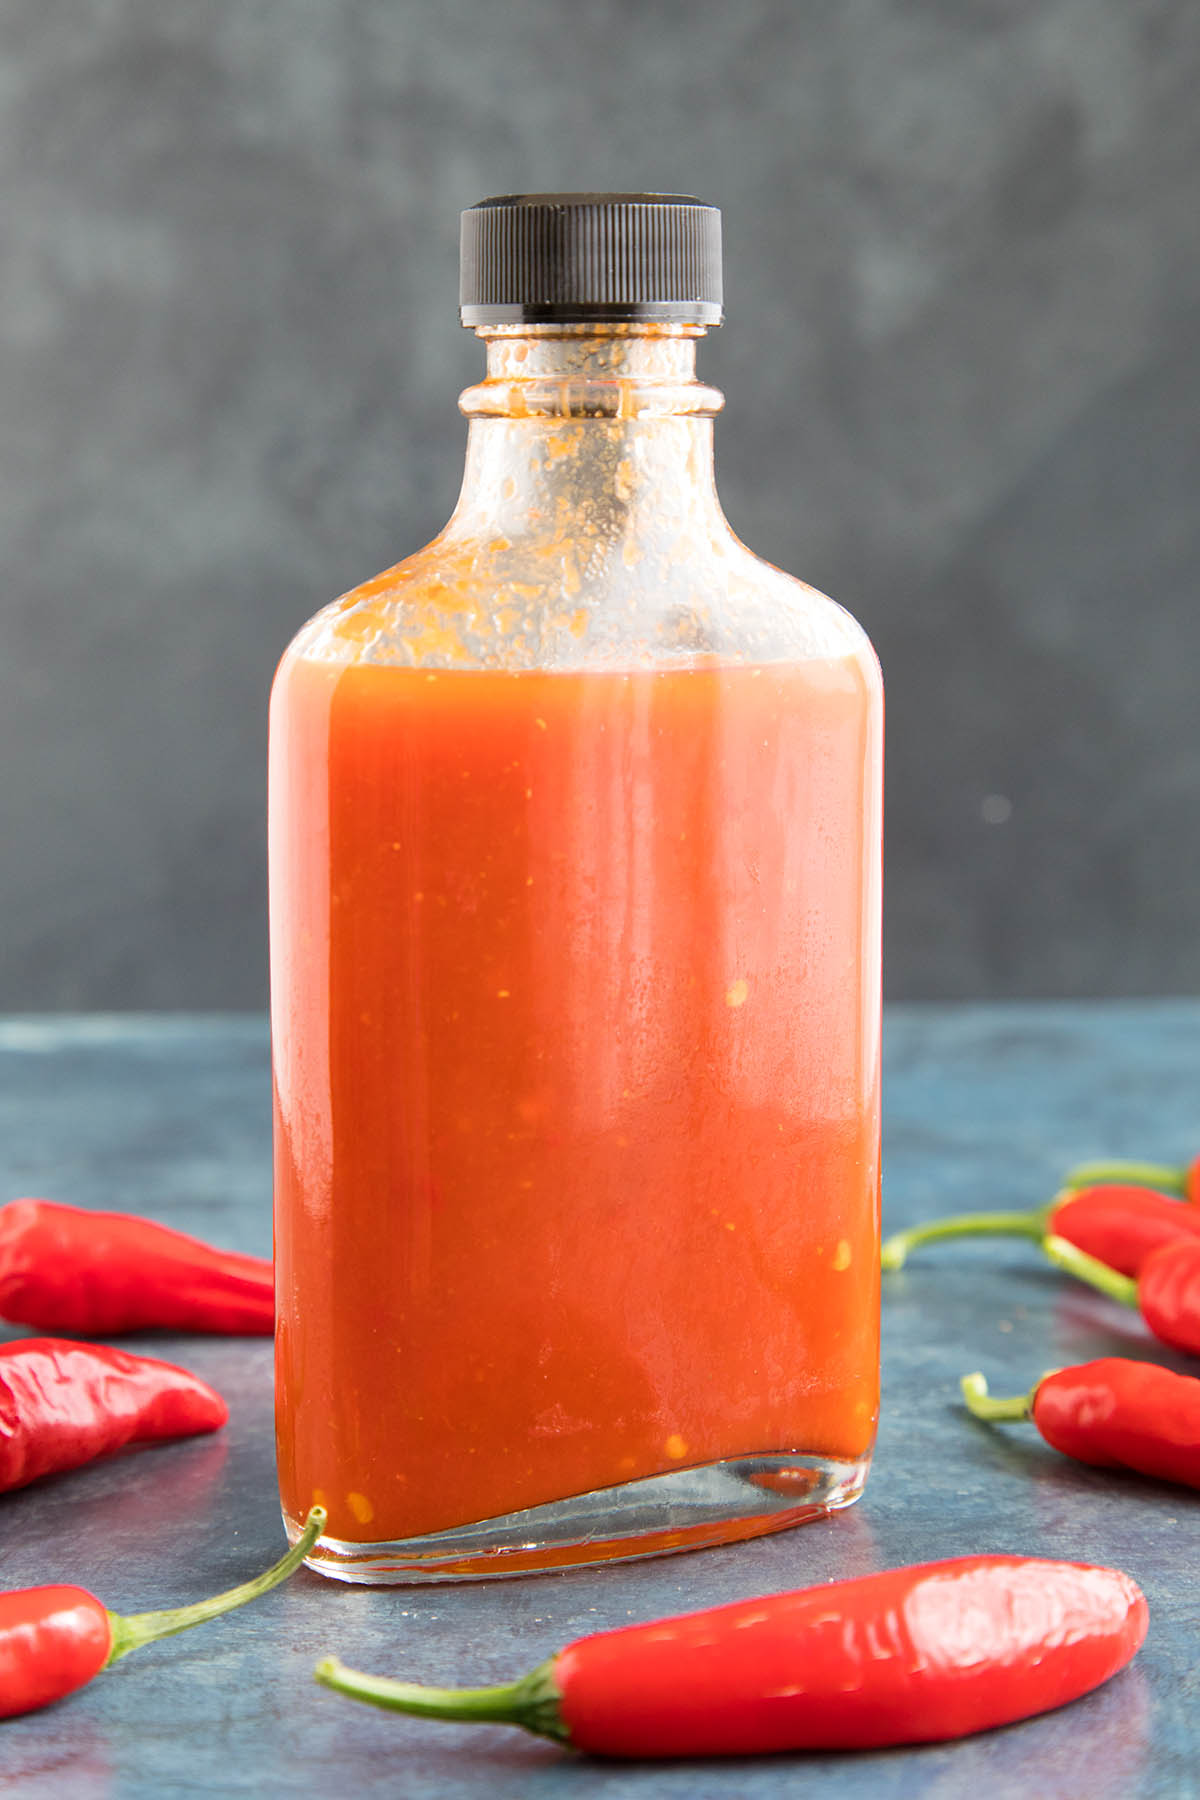 Homemade Sriracha Hot Sauce Recipe